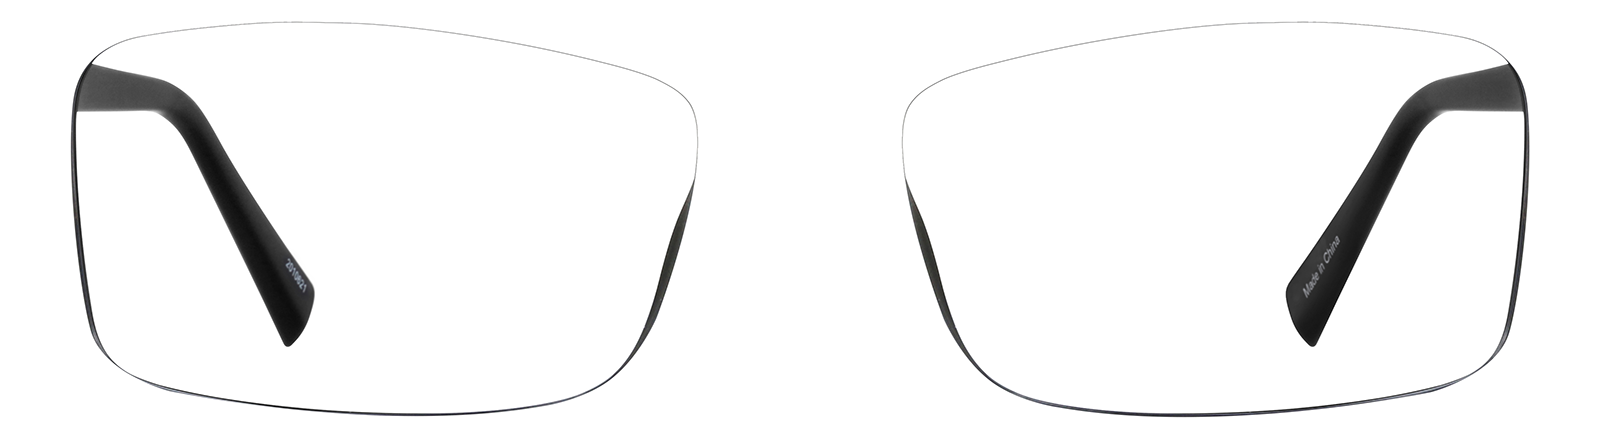 Rectangle Glasseslens arm image